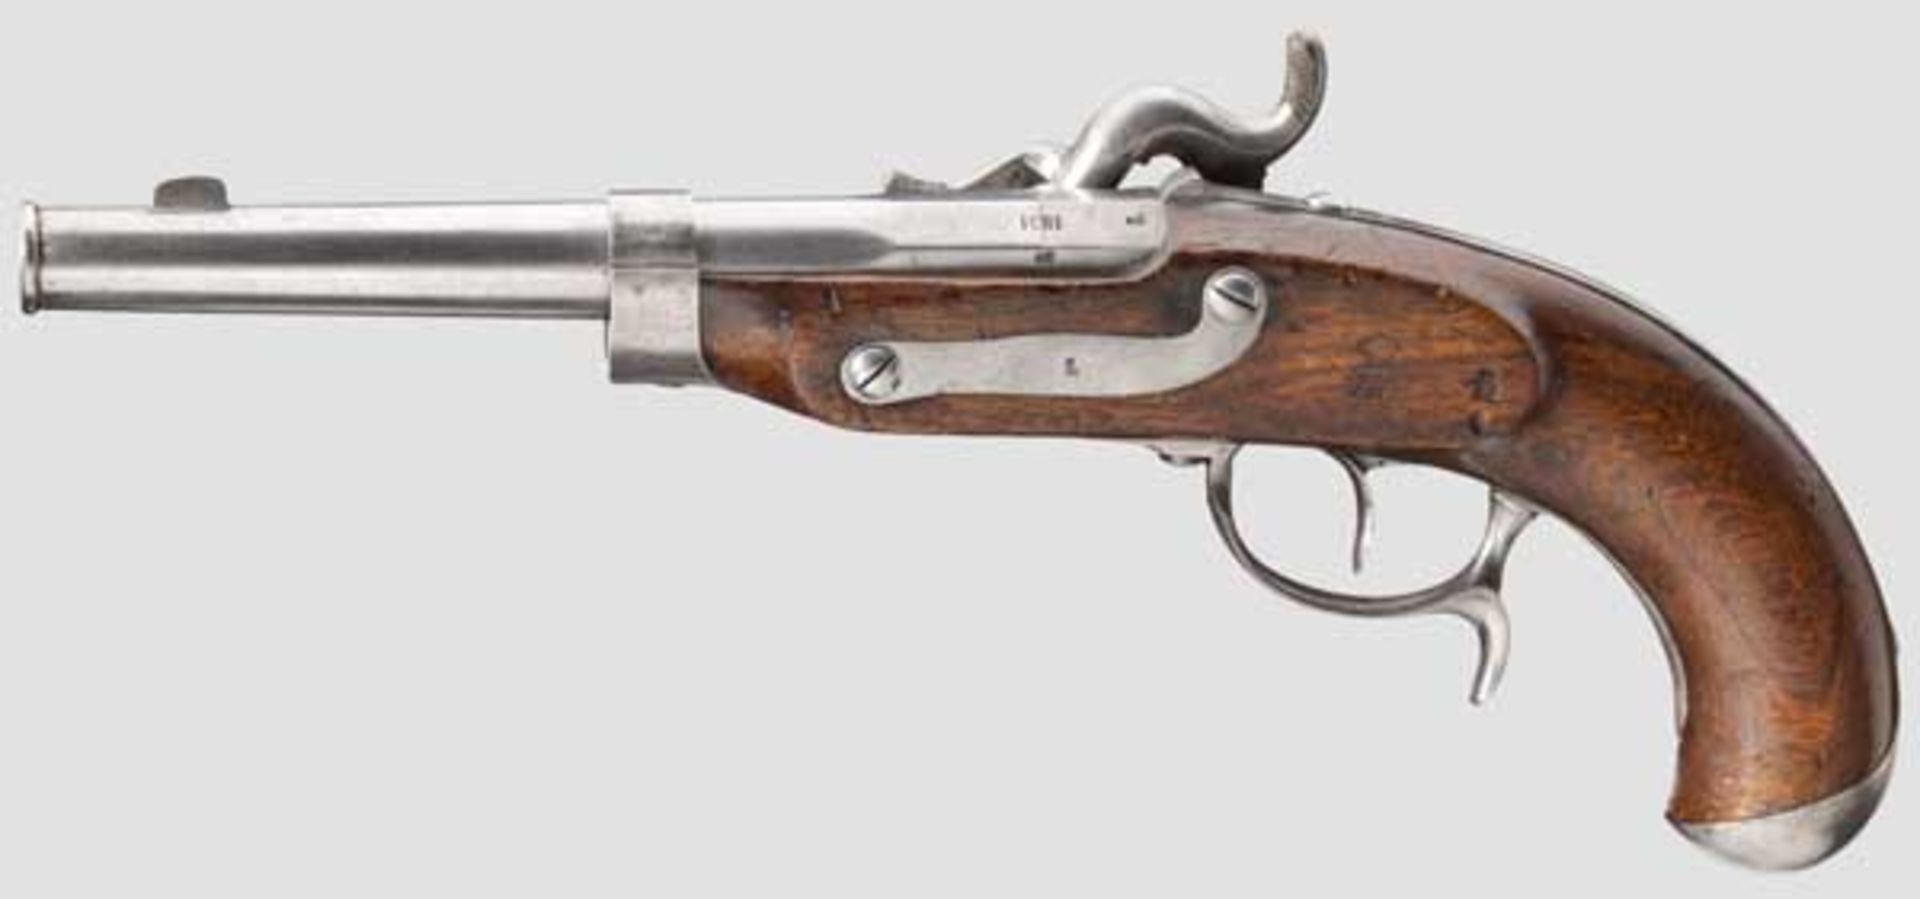 Pistole für Grenzaufseher M 1851 Glatter Lauf mit kanonierter Mündung im Kaliber 14,5 mm, über der